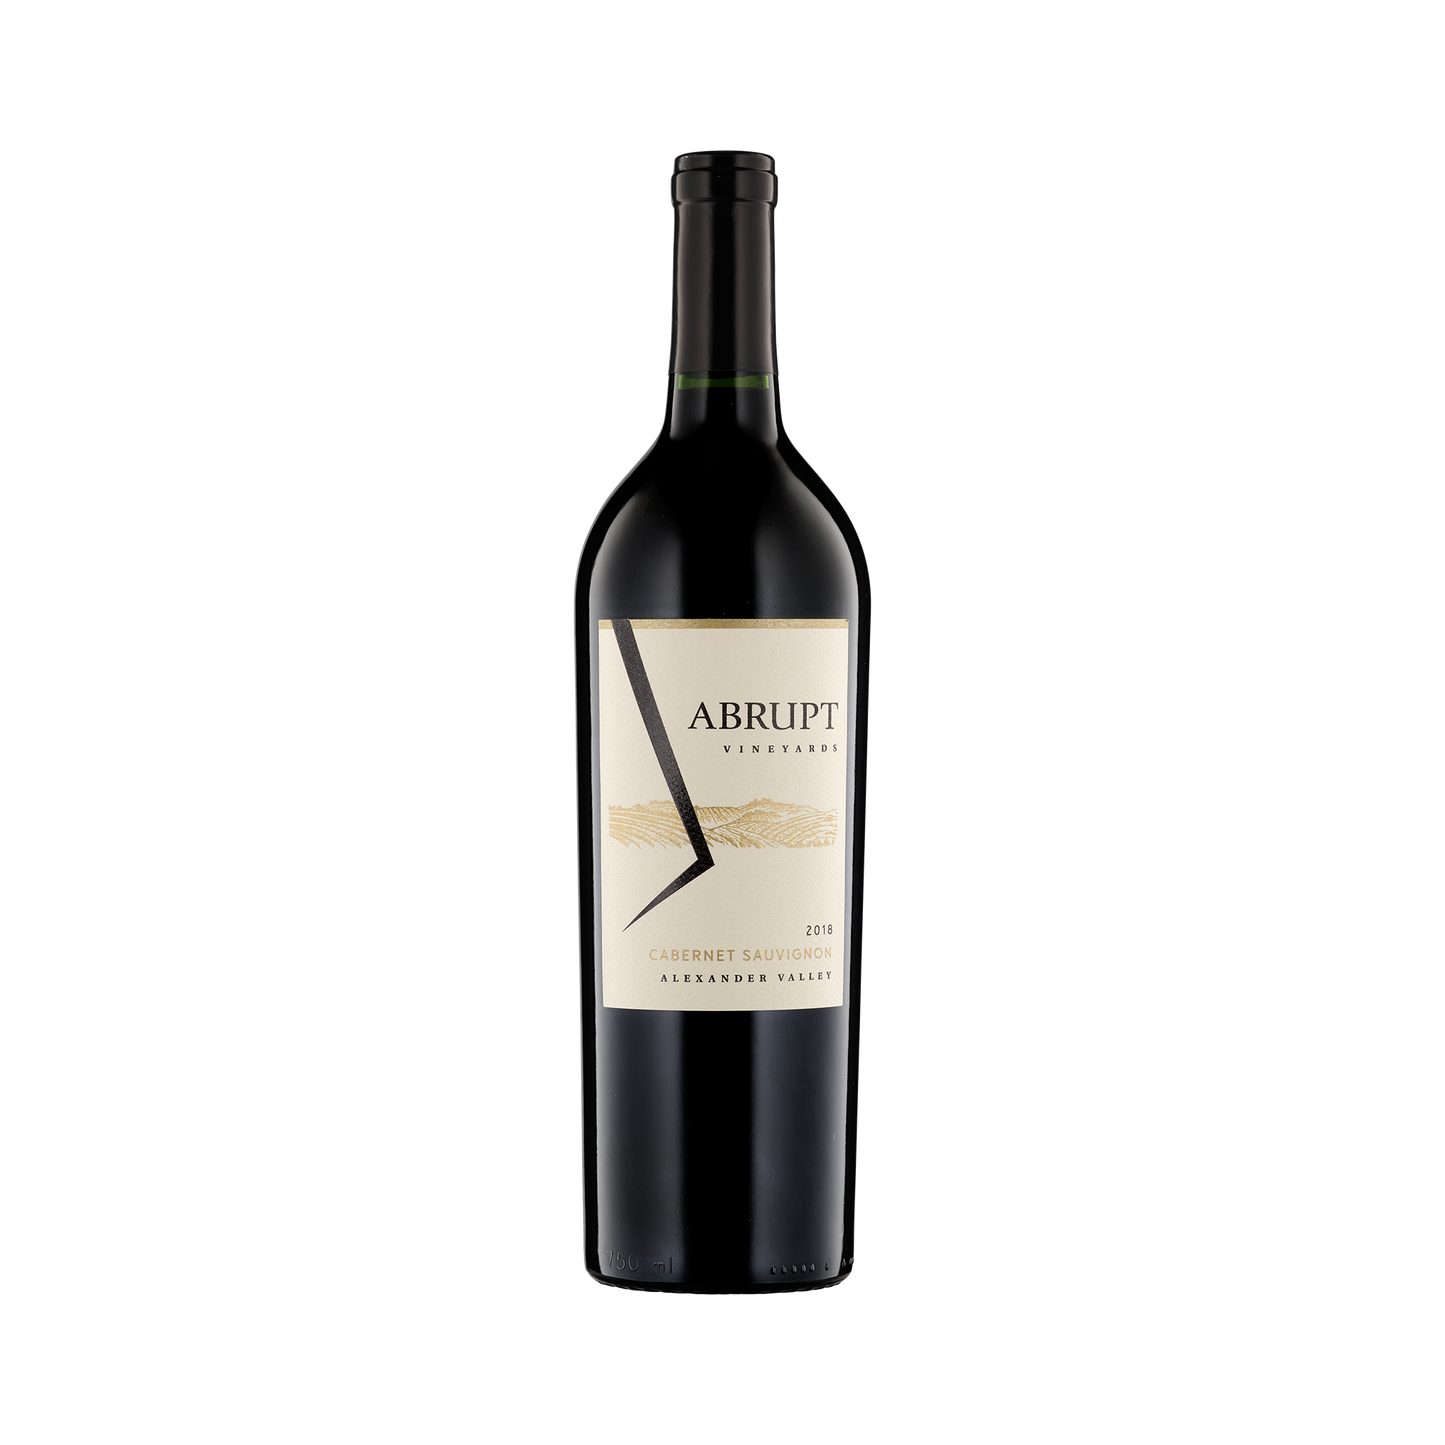 A bottle of Abrupt Vineyards 2018 Cabernet Sauvignon